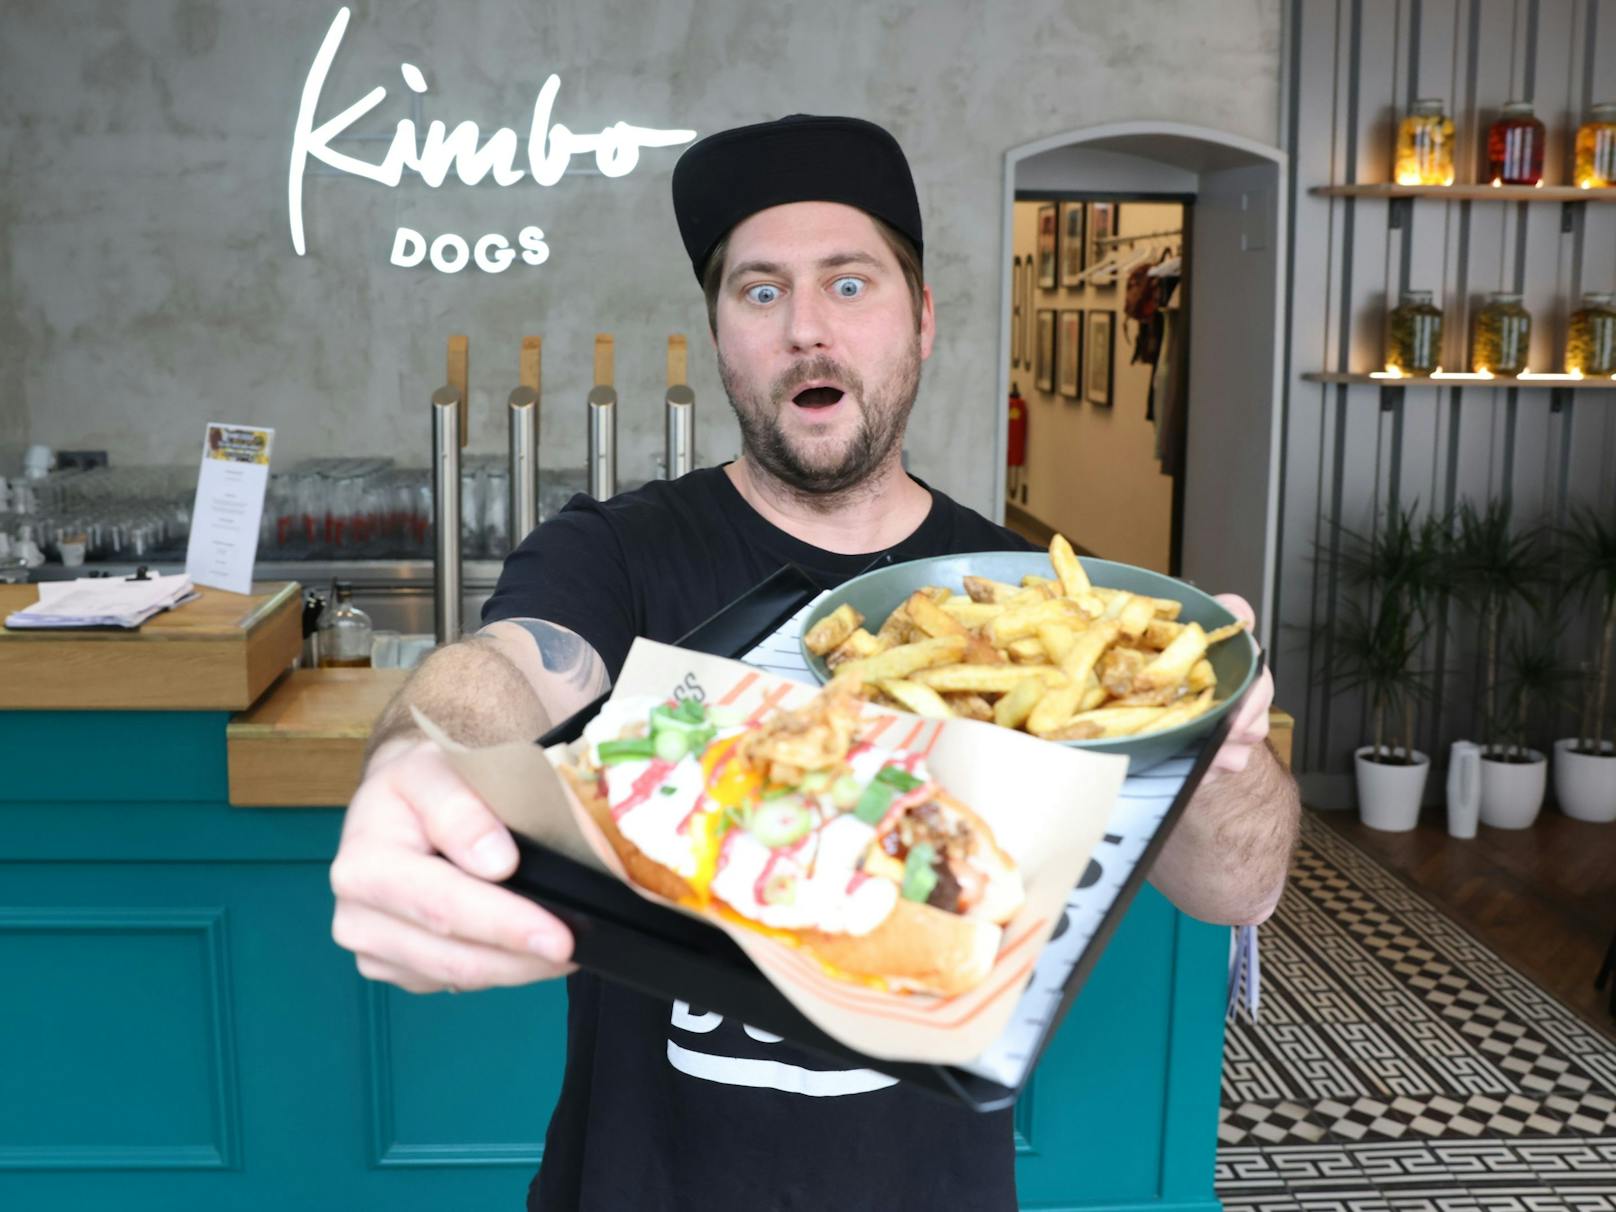 Inhaber Mario Sommer hat für seine kreativen Hot Dogs von "Kimbo Dogs" nun einen festen Wohnsitz in Wien. Jeden Tag vergriffen sind derzeit aber die doppelt frittierten "Chimichangas".